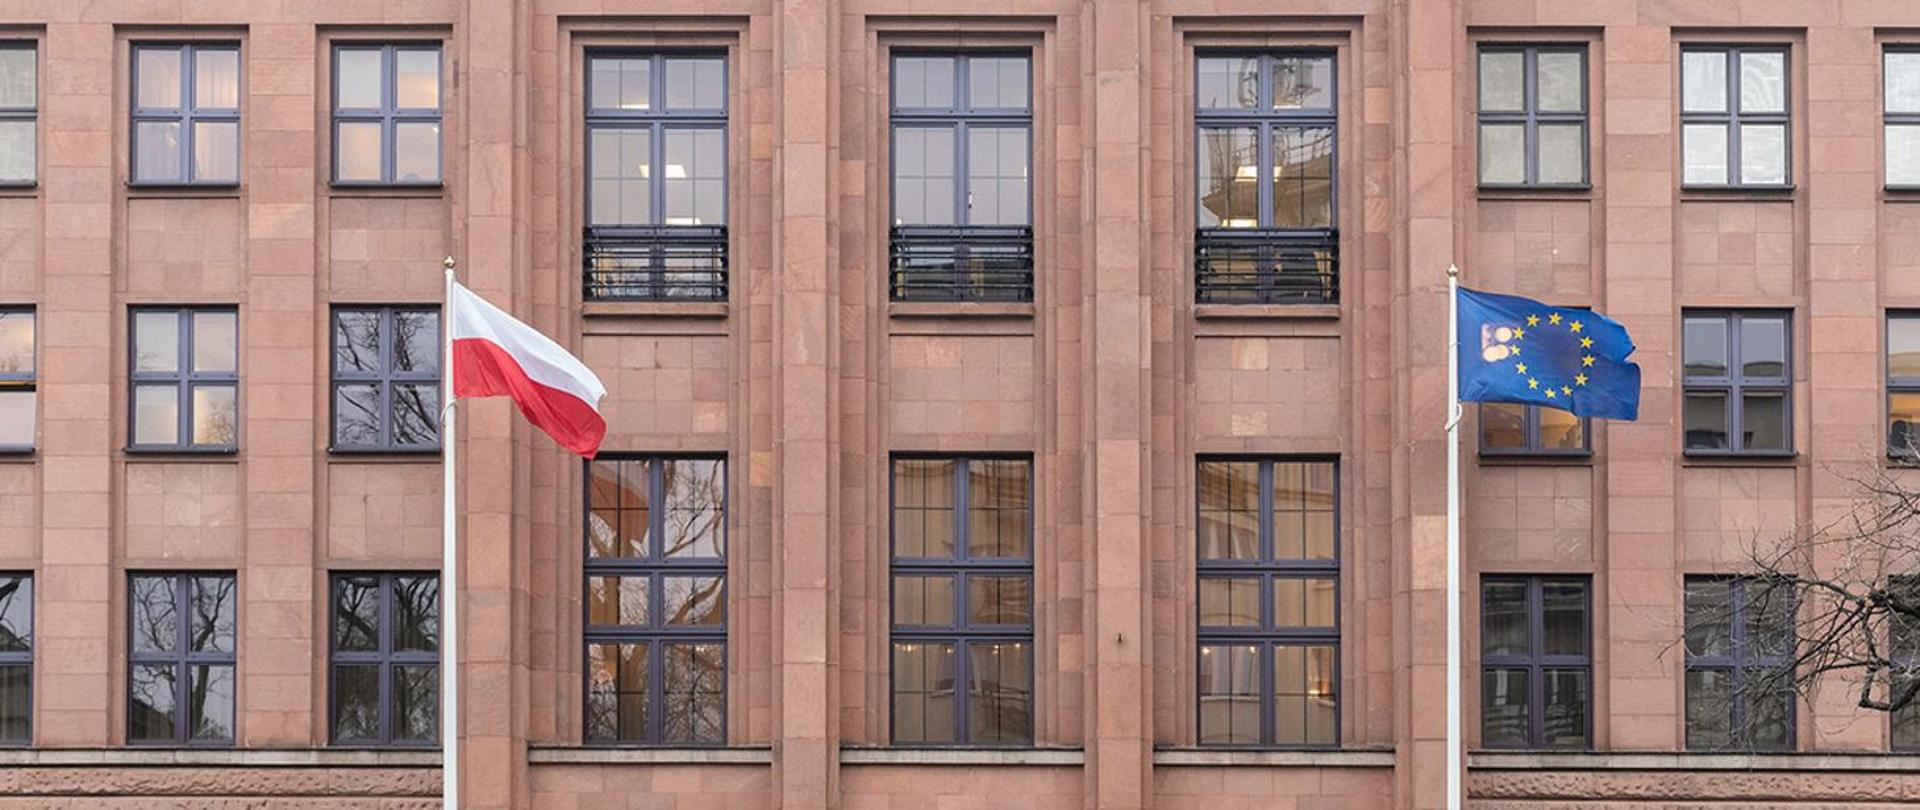 Oświadczenie Doradczego Komitetu Prawnego przy Ministrze Spraw Zagranicznych RP, Warszawa, 4 marca 2022 r.